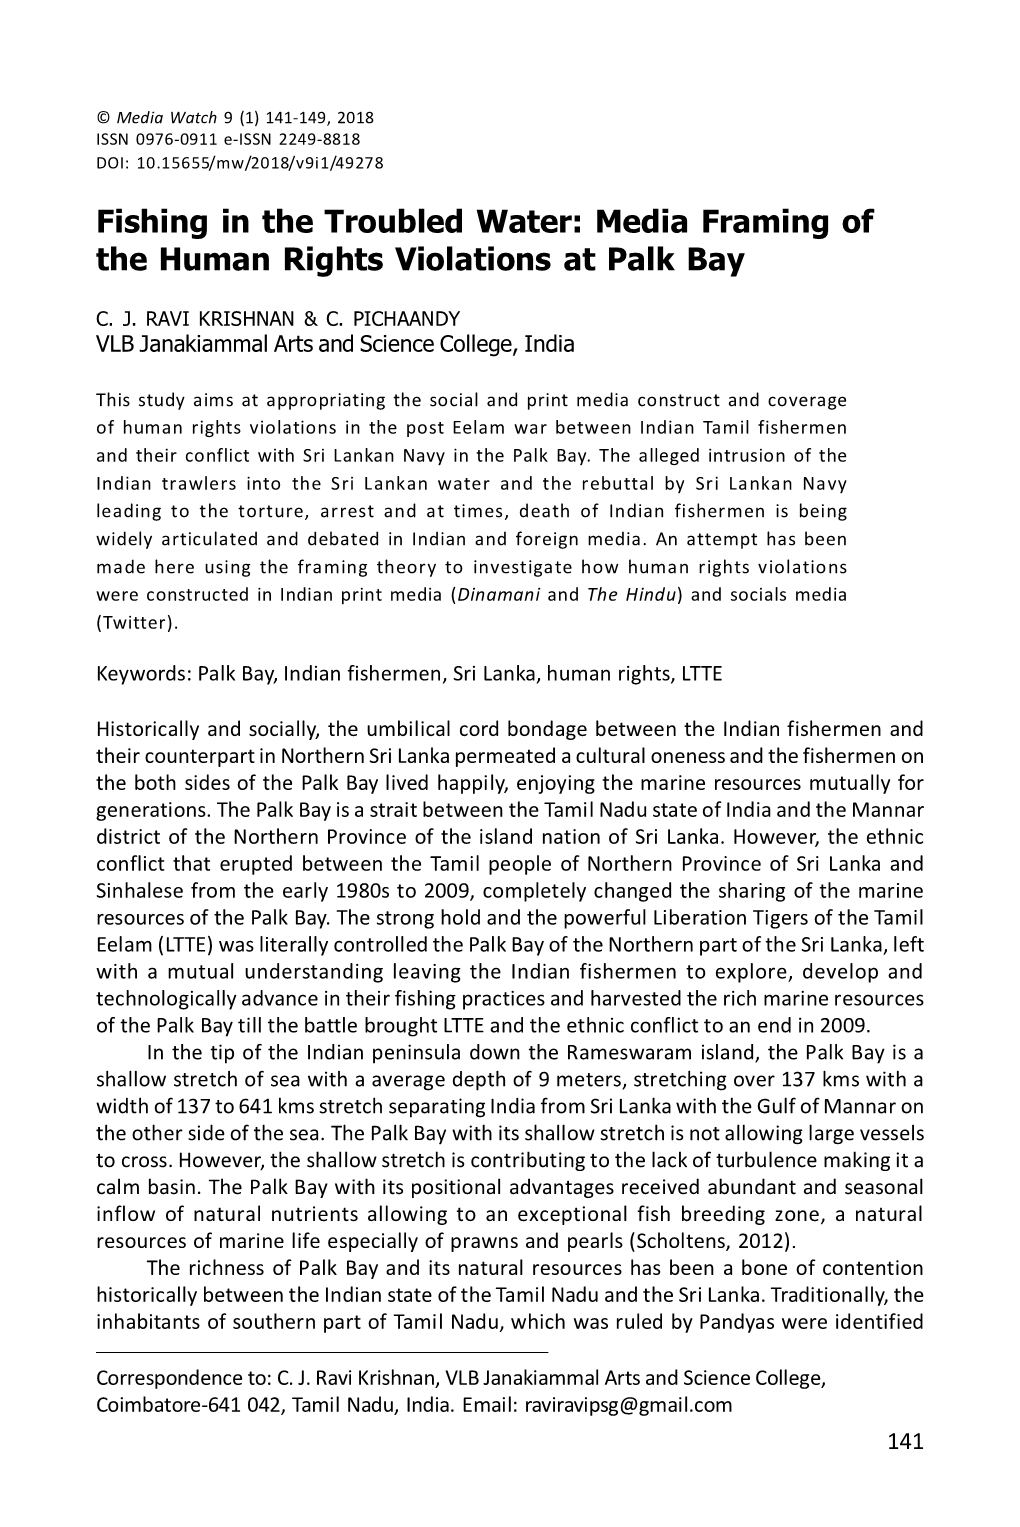 Media Framing of the Human Rights Violations at Palk Bay